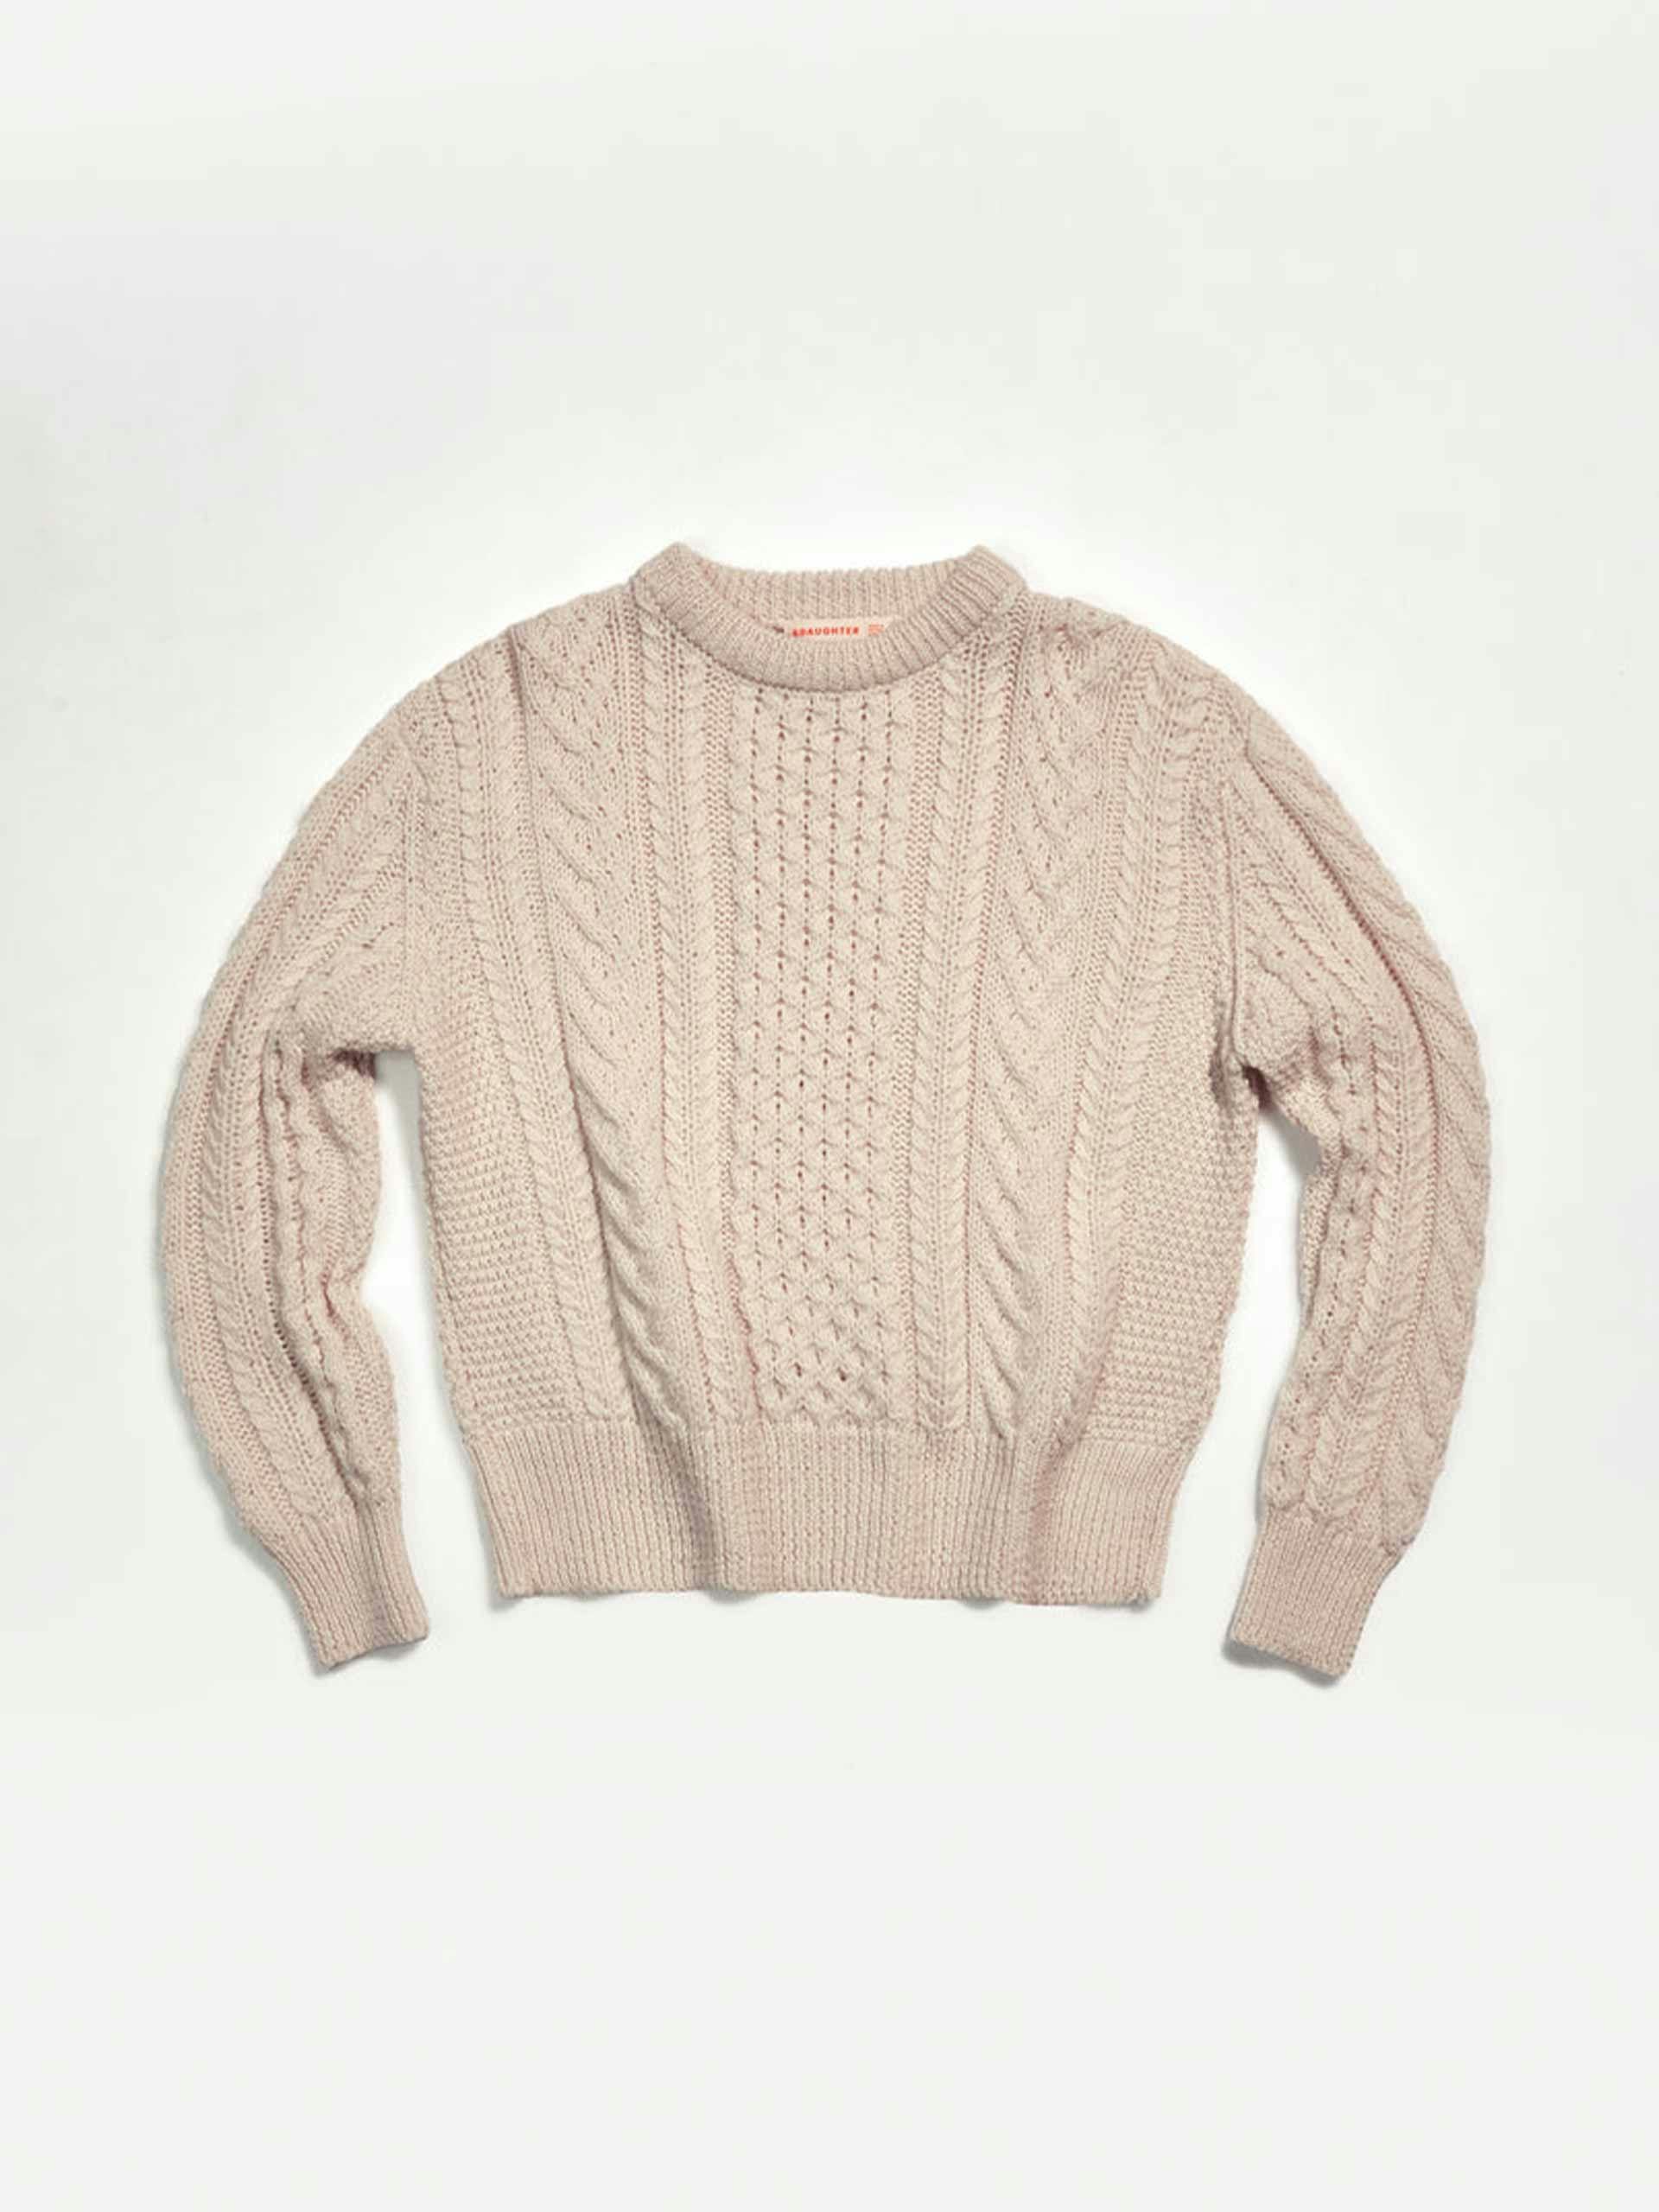 Beige knitted aran sweater